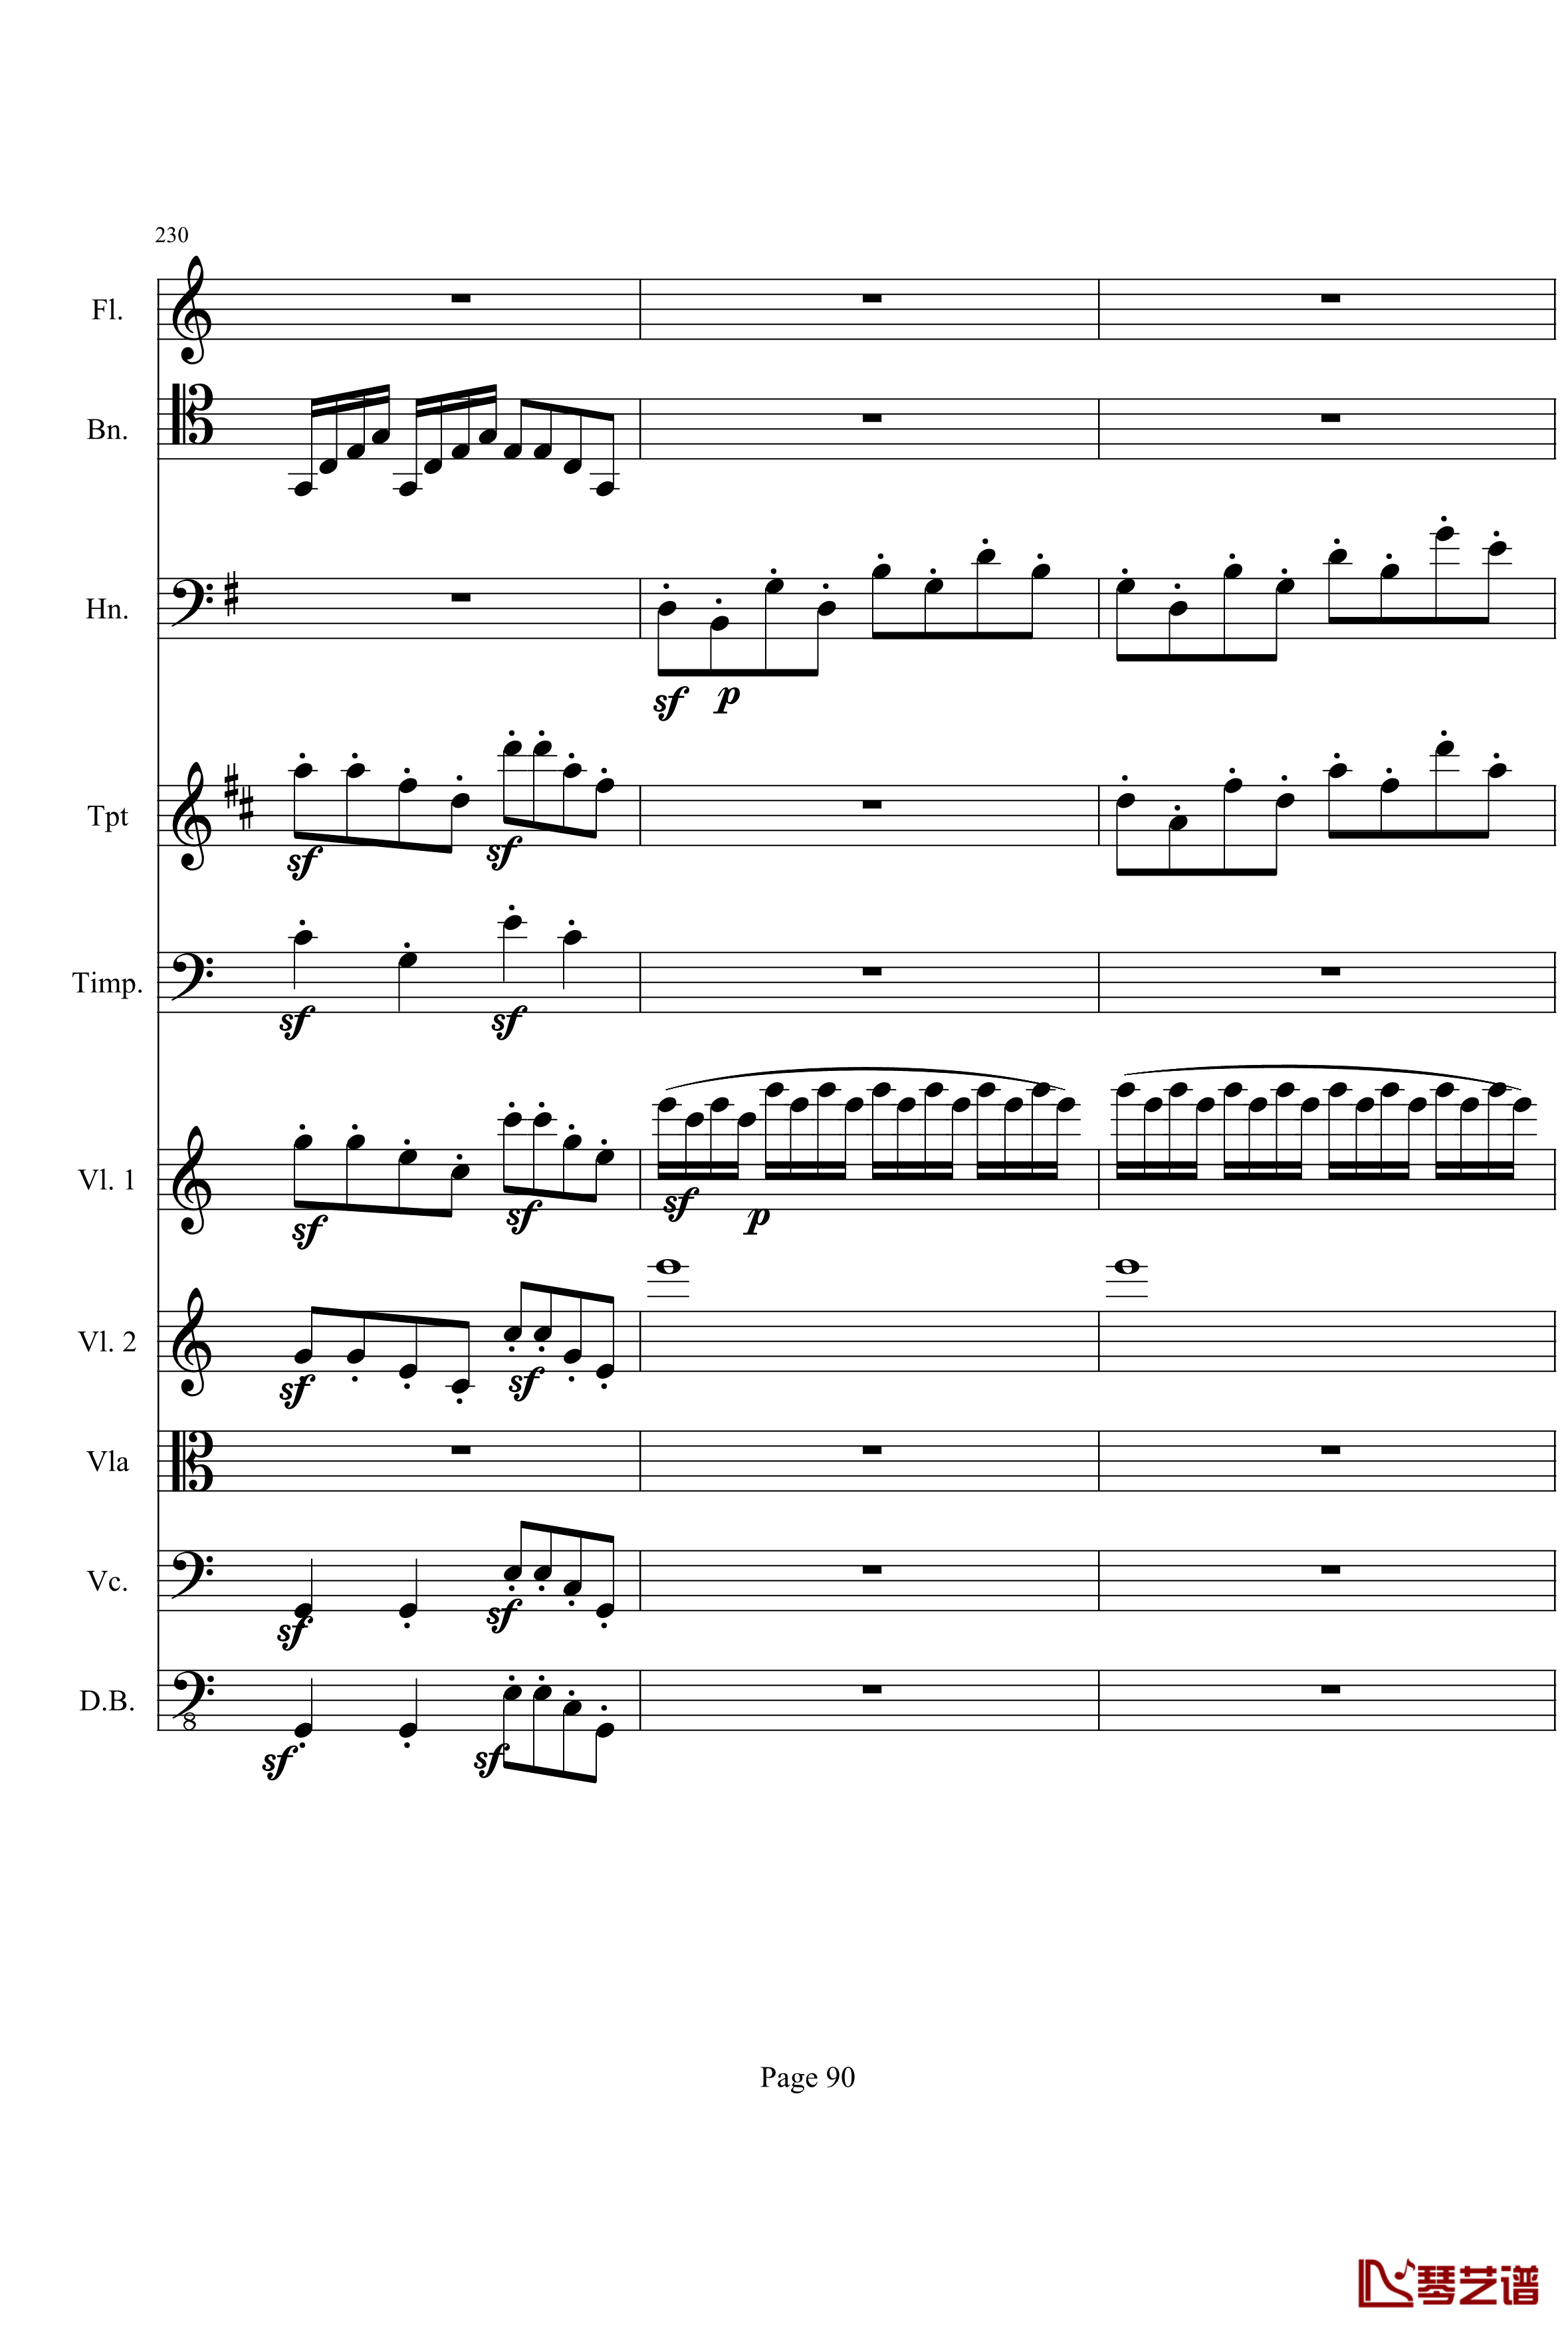 奏鸣曲之交响钢琴谱-第21首-Ⅰ-贝多芬-beethoven90